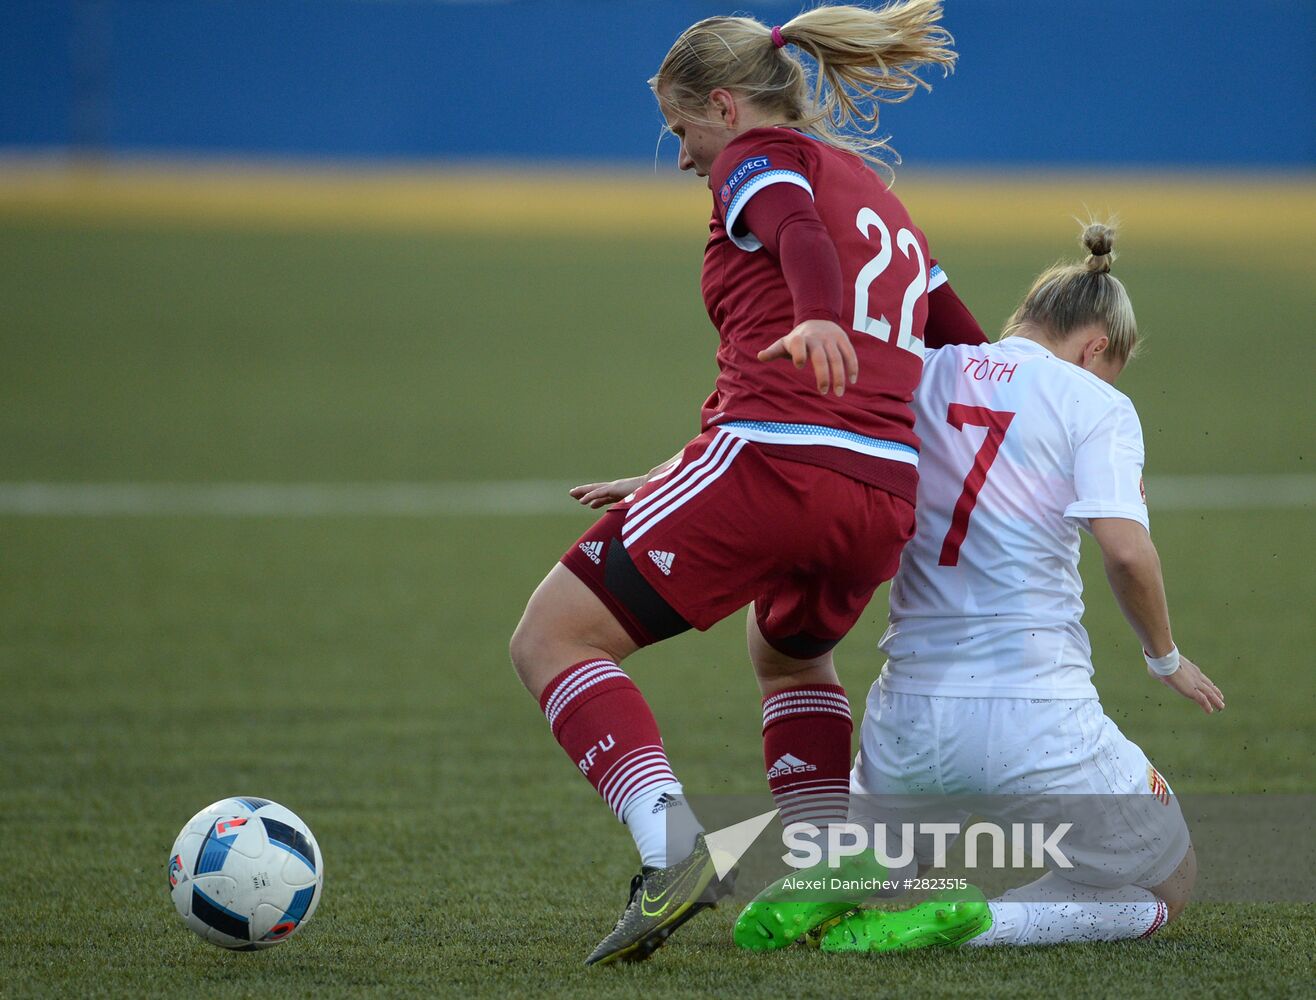 UEFA Women's Euro 2017 qualifier. Russia vs. Hungary